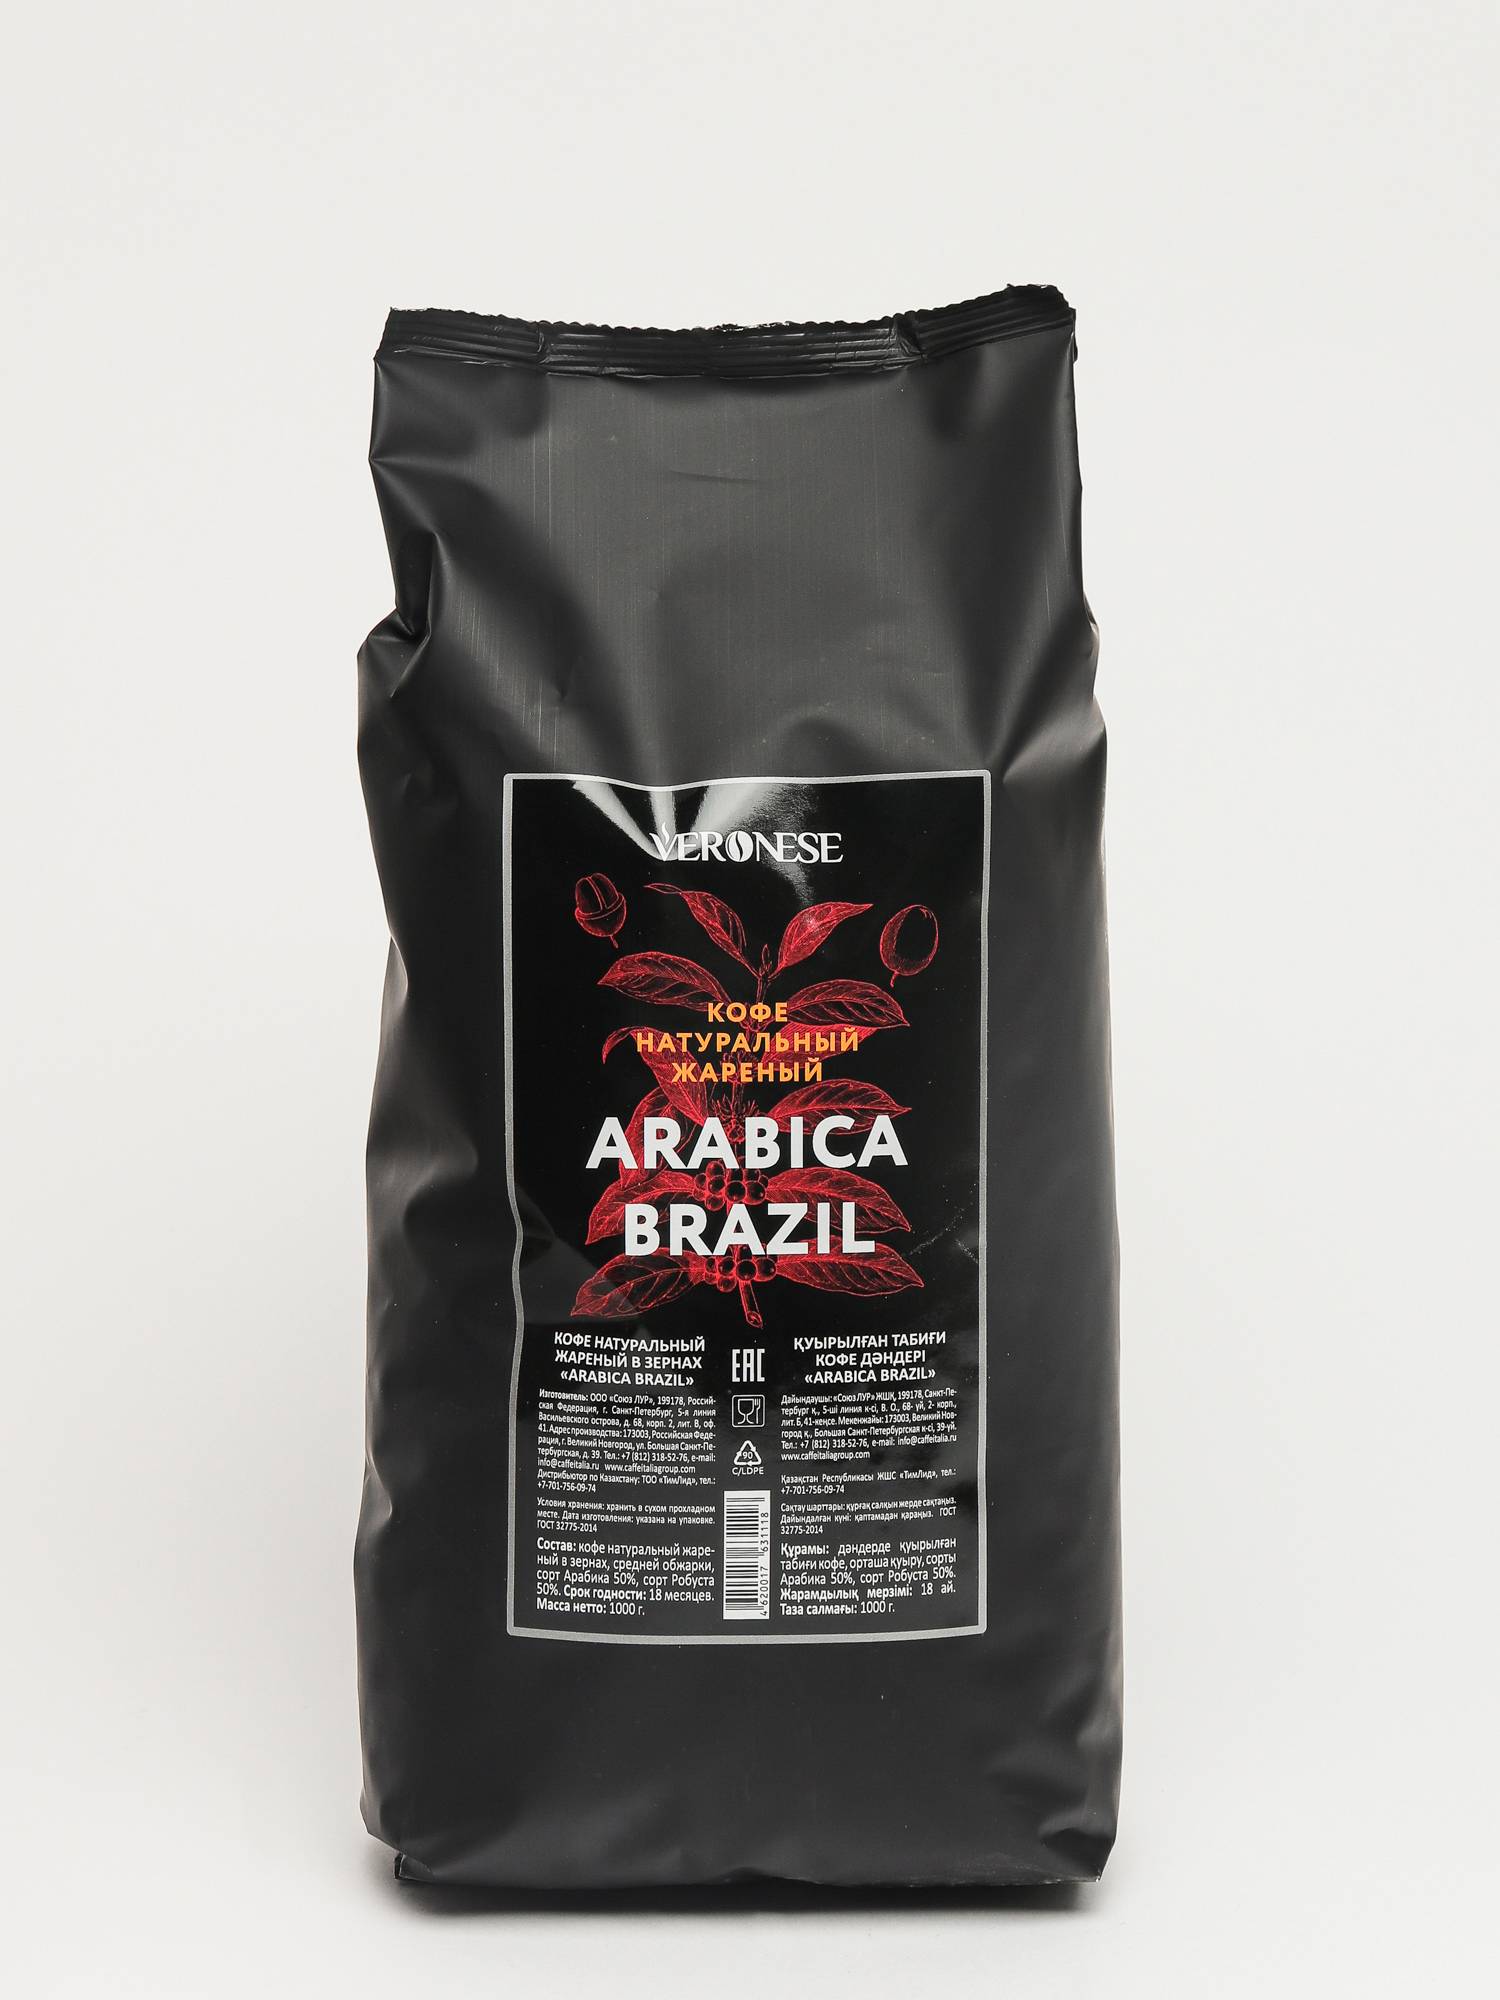 Рейтинг хорошего кофе в зернах отзывы. Кофе в зернах Veronese Arabica. Кофе в зернах Veronese Brazil. Молотый кофе Арабика Робуста. Кофе молотый Veronese Arabica.